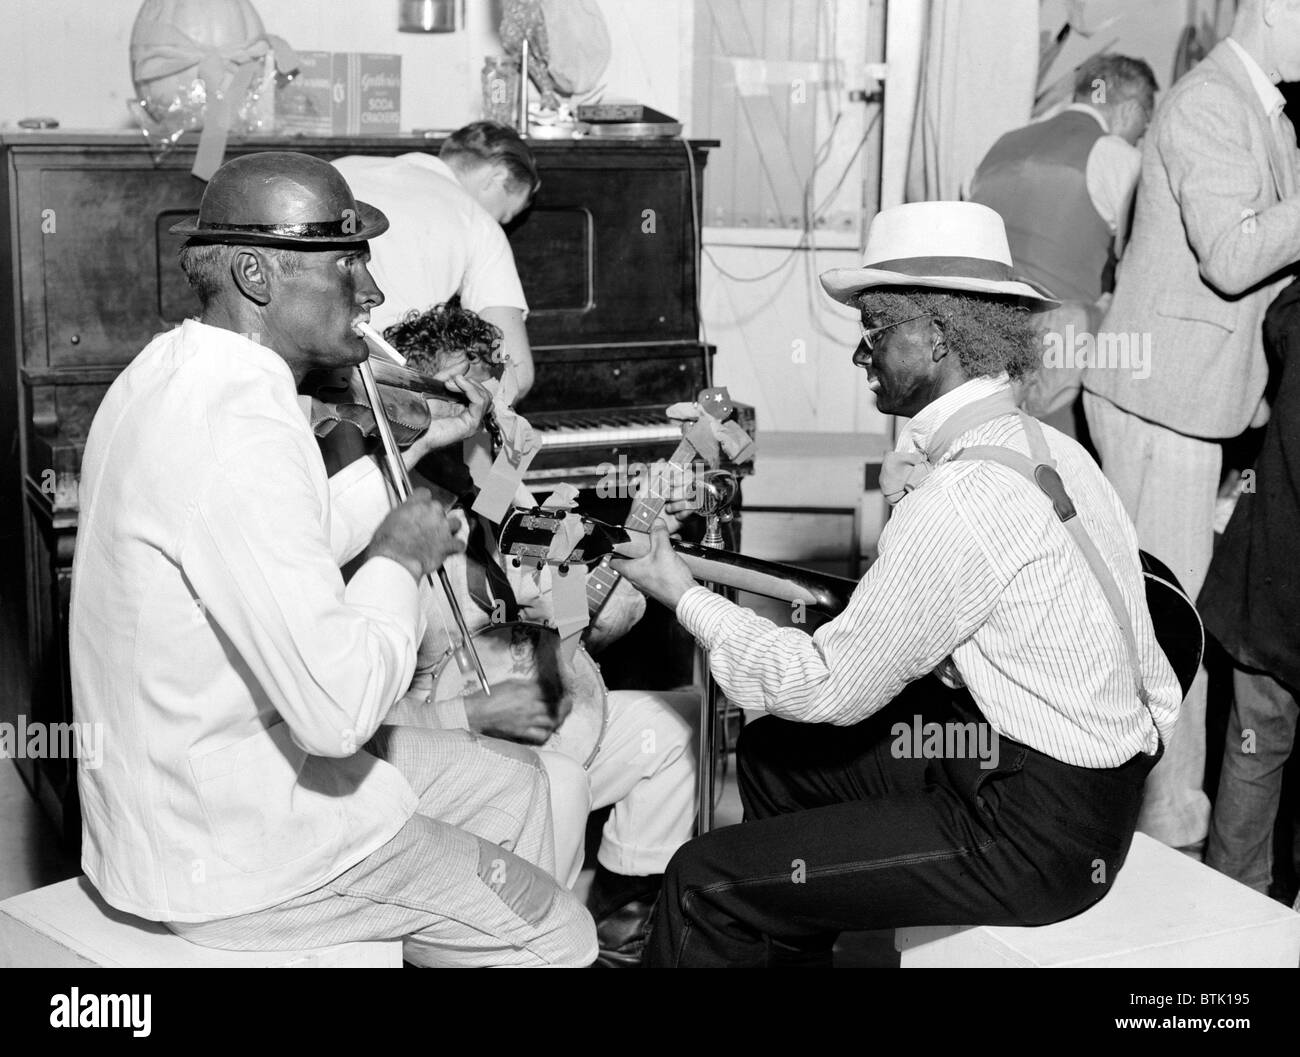 Folk-Musik. Ambulante Arbeiter in Blackface bieten Musik zum Tanzen im Shafter Camp für Migranten. Halloween Party, Shafter, Kalifornien, Foto von Dorothea Lange, 1938 Stockfoto